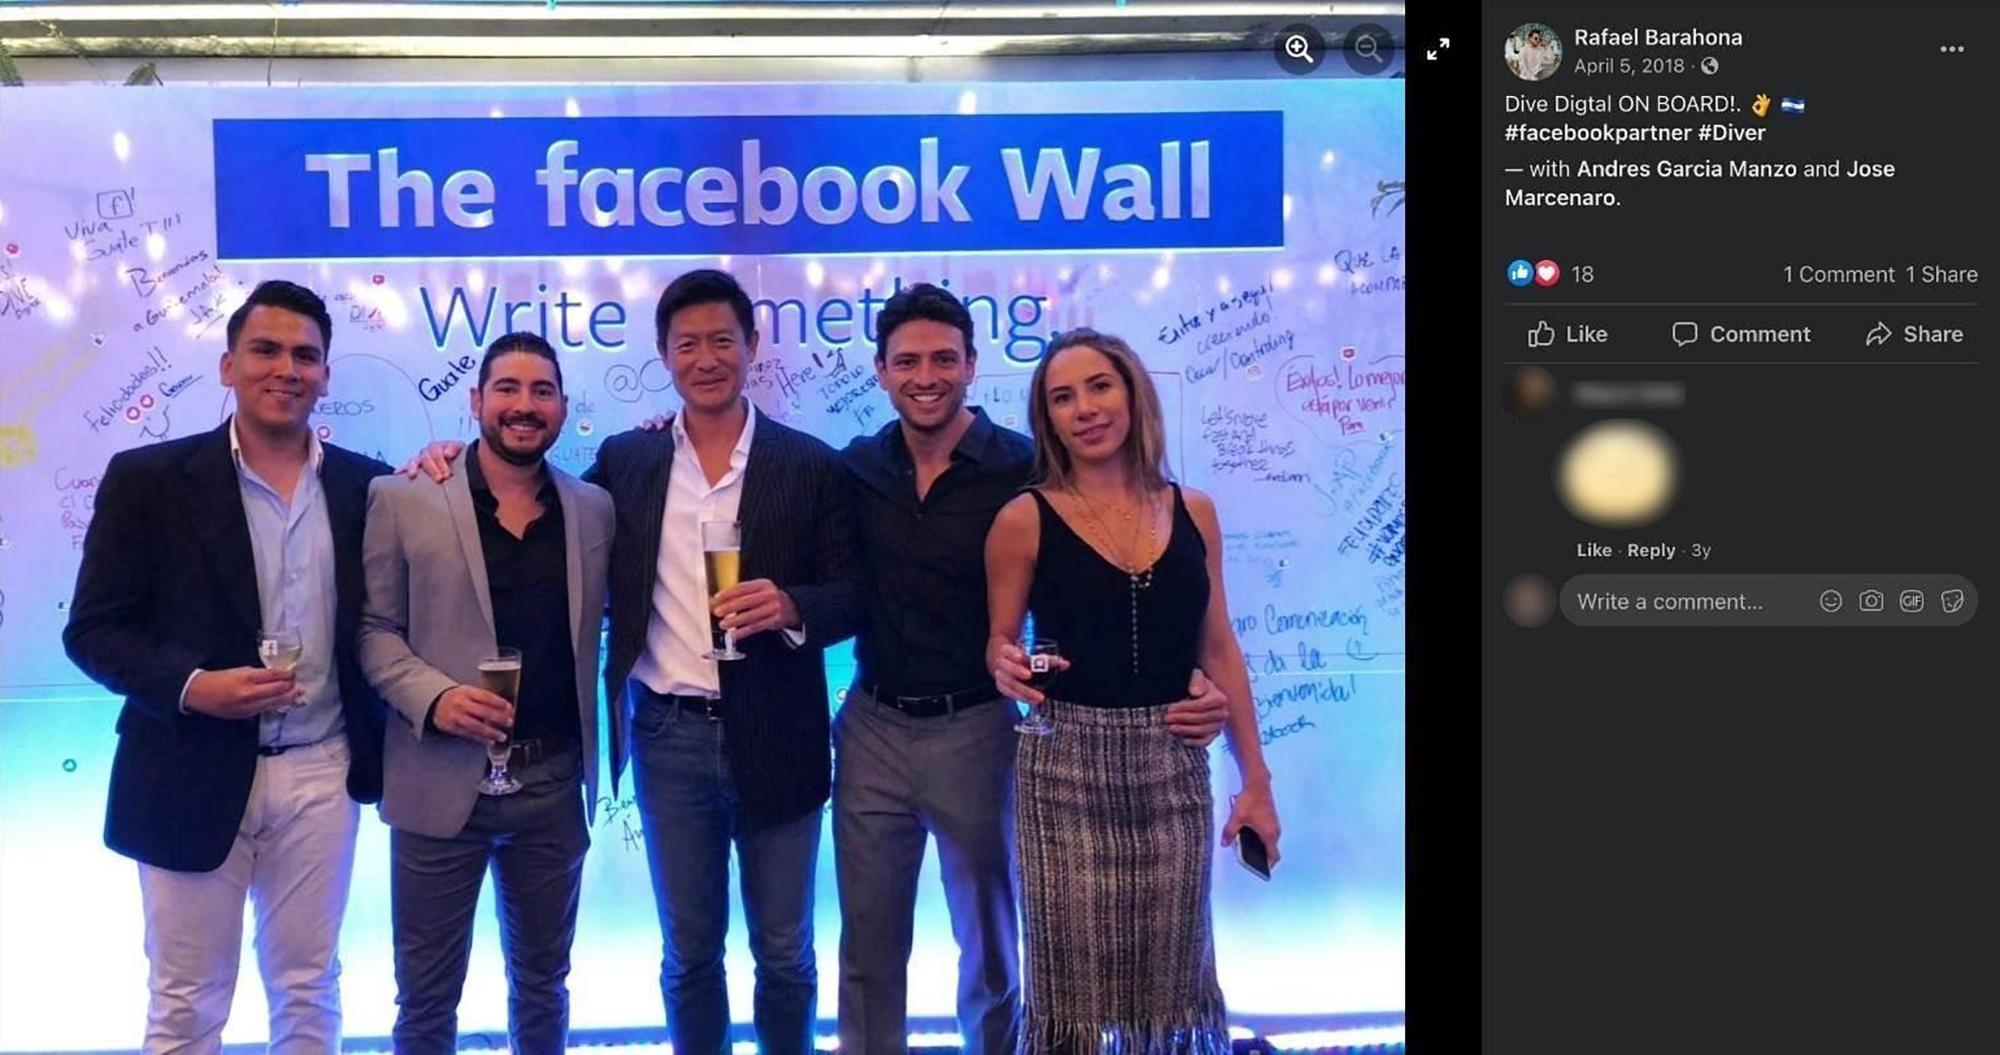 García Manzo (segundo a la derecha) con José Marcenaro (segundo a la izquierda) en un evento de Dive Digital el 5 de abril de 2018. Publicada en la cuenta de Facebook de Rafael Barahona (primero a la izquierda), gerente comercial de Dive Digital.